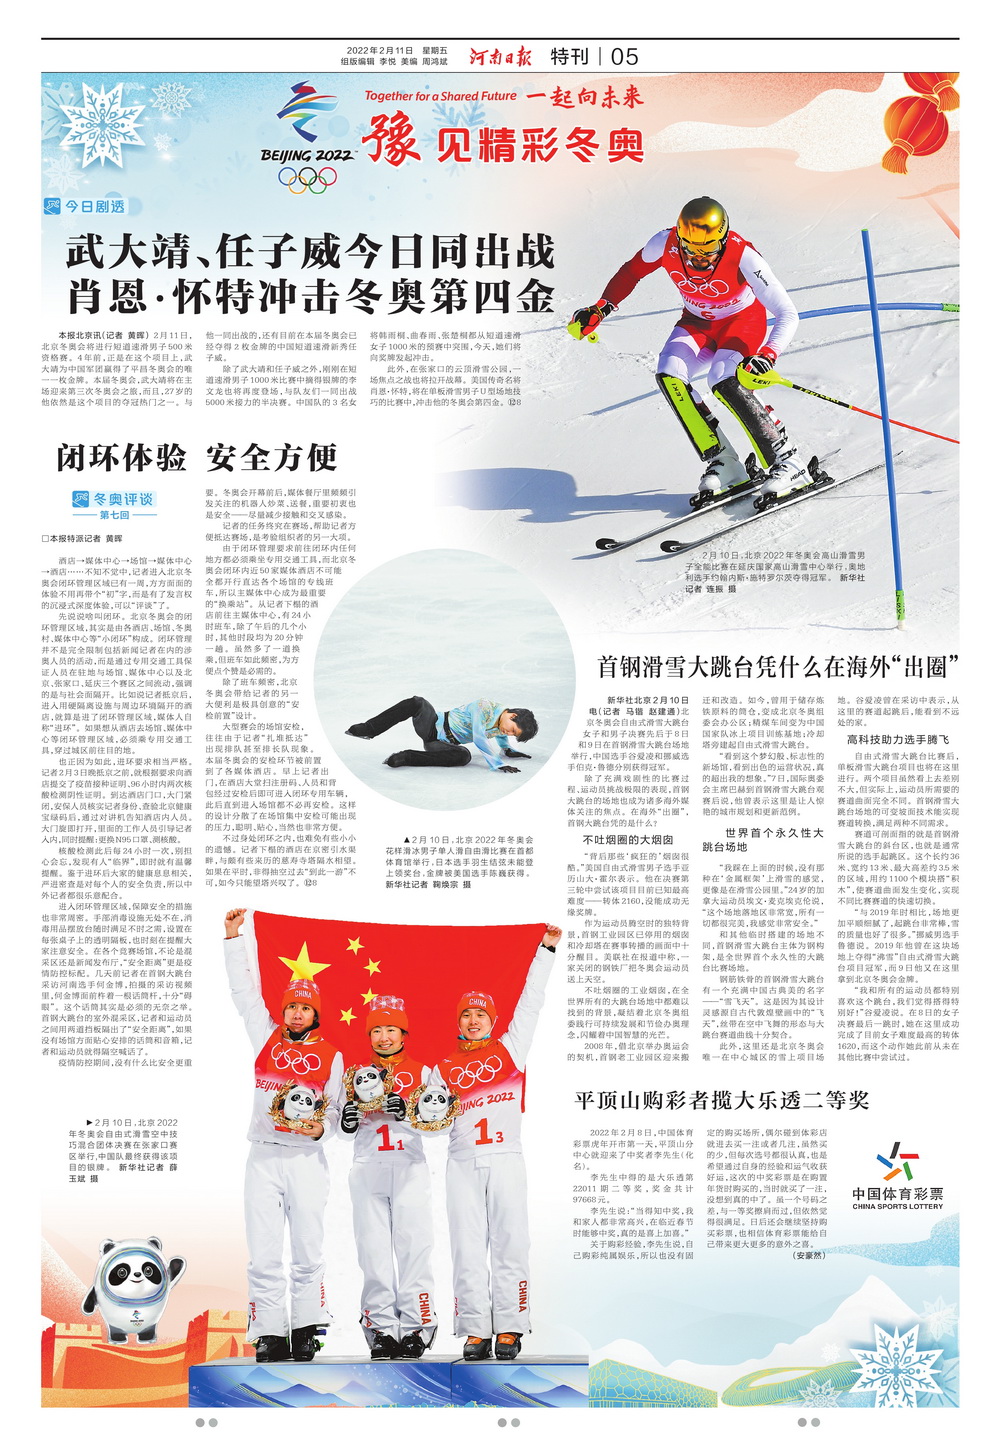 北京冬奥新闻简报图片